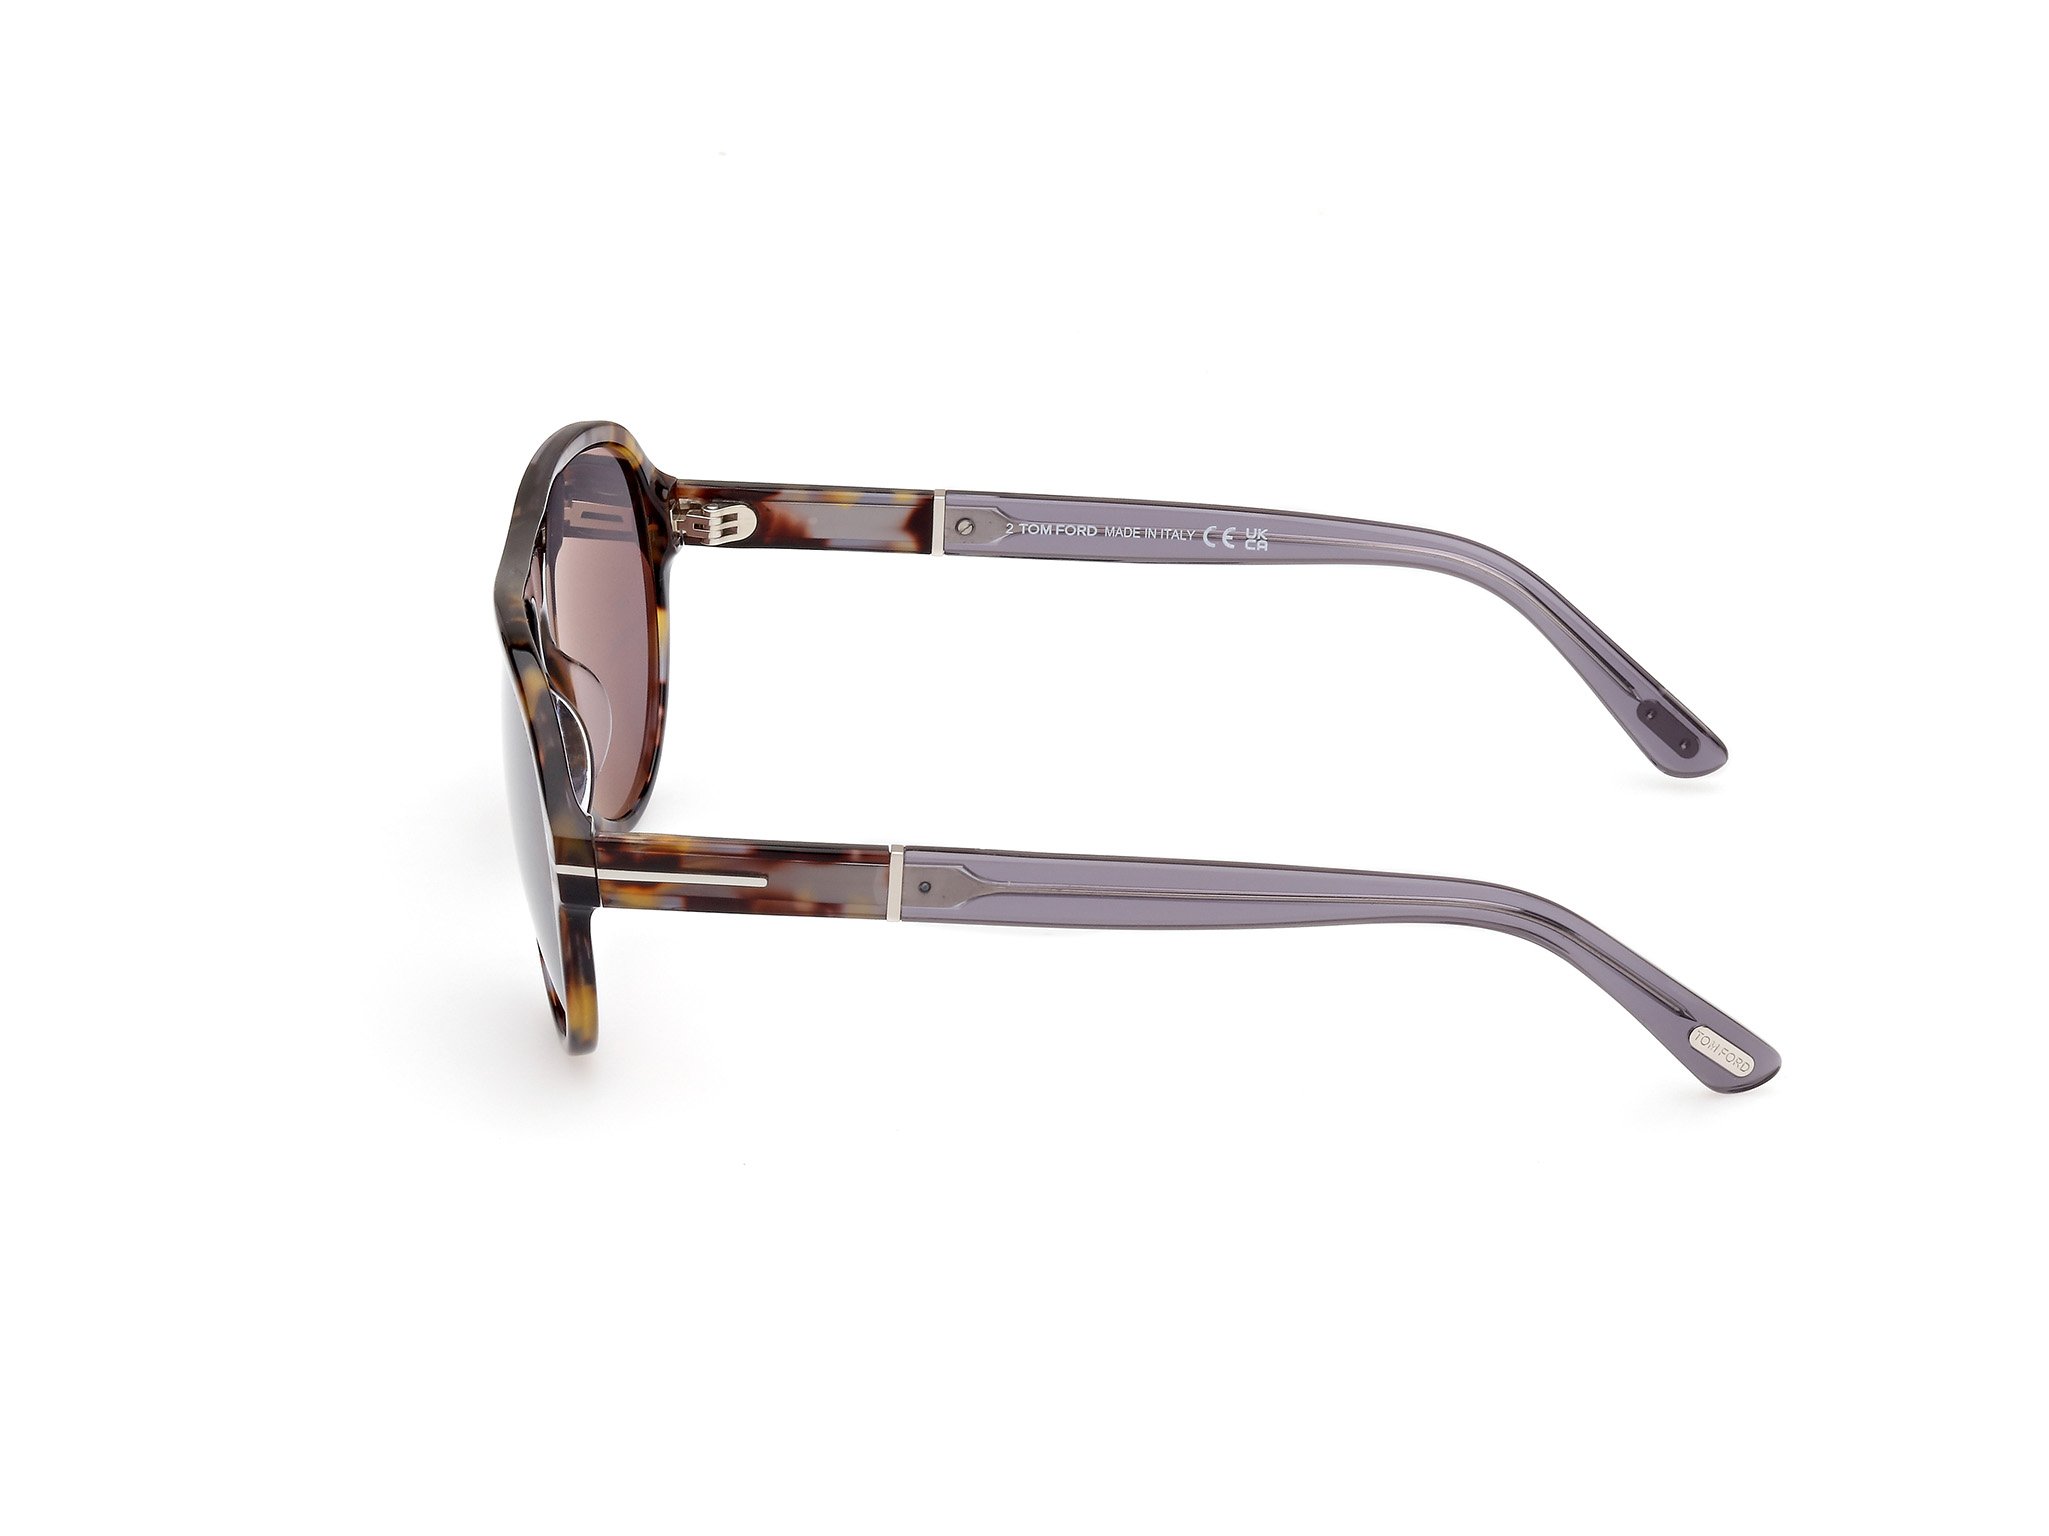 Tom Ford Sonnenbrille für Herren QUINCY FT1080 55C havanna/grau